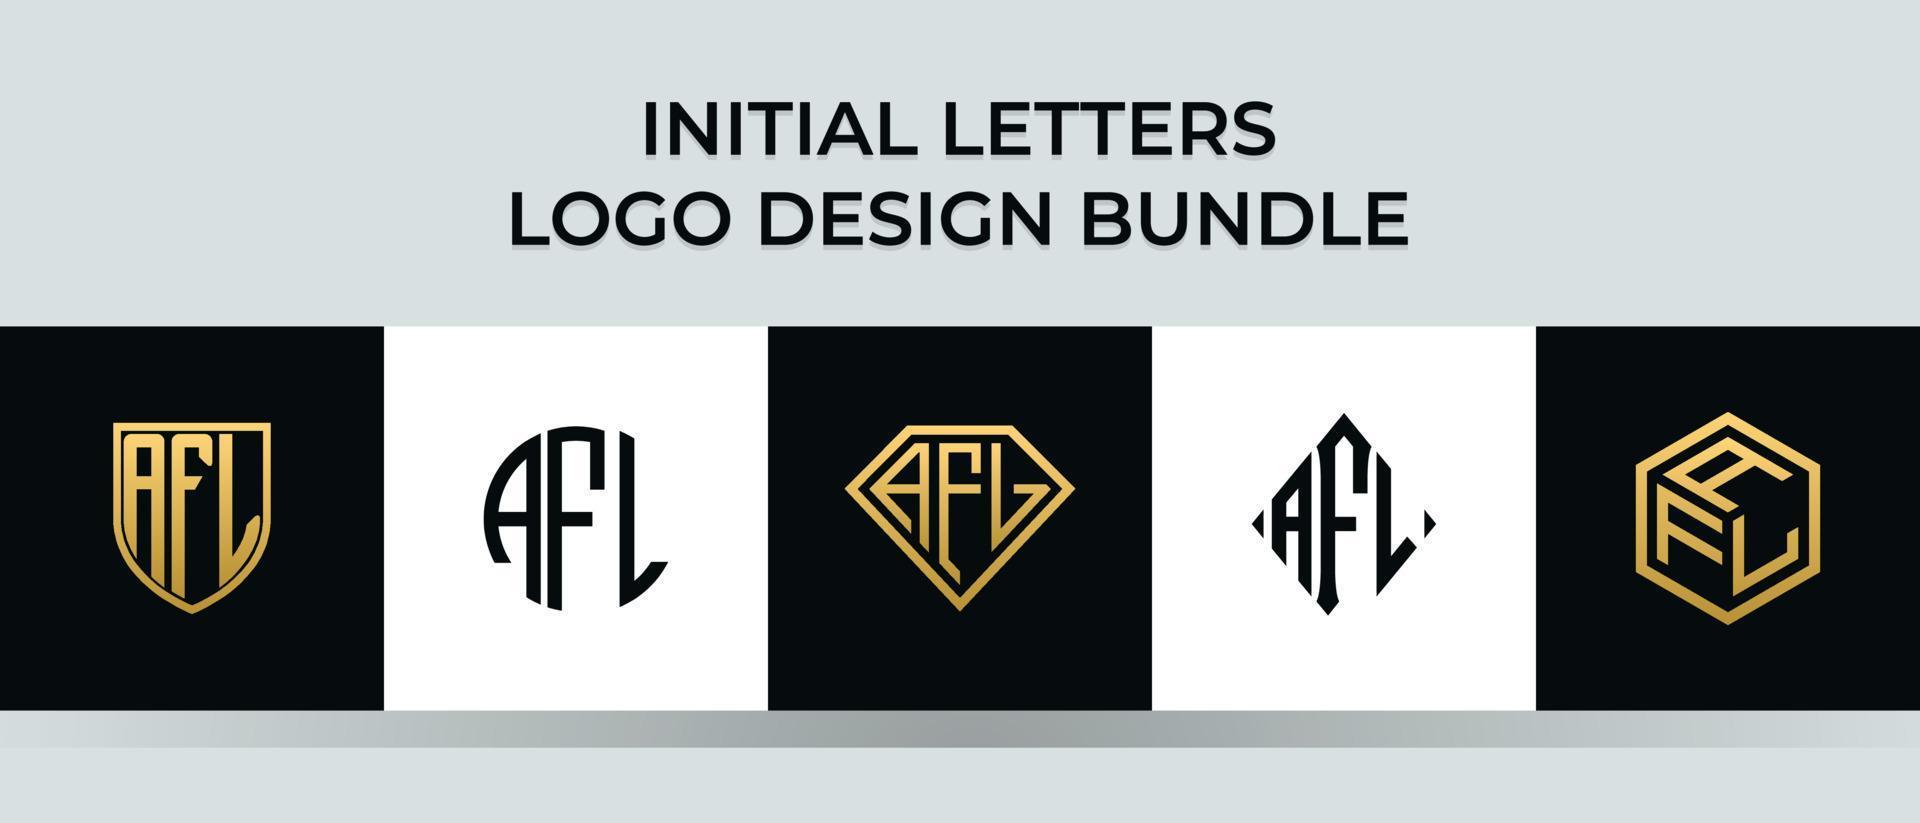 Initial letters AFL logo designs Bundle vector